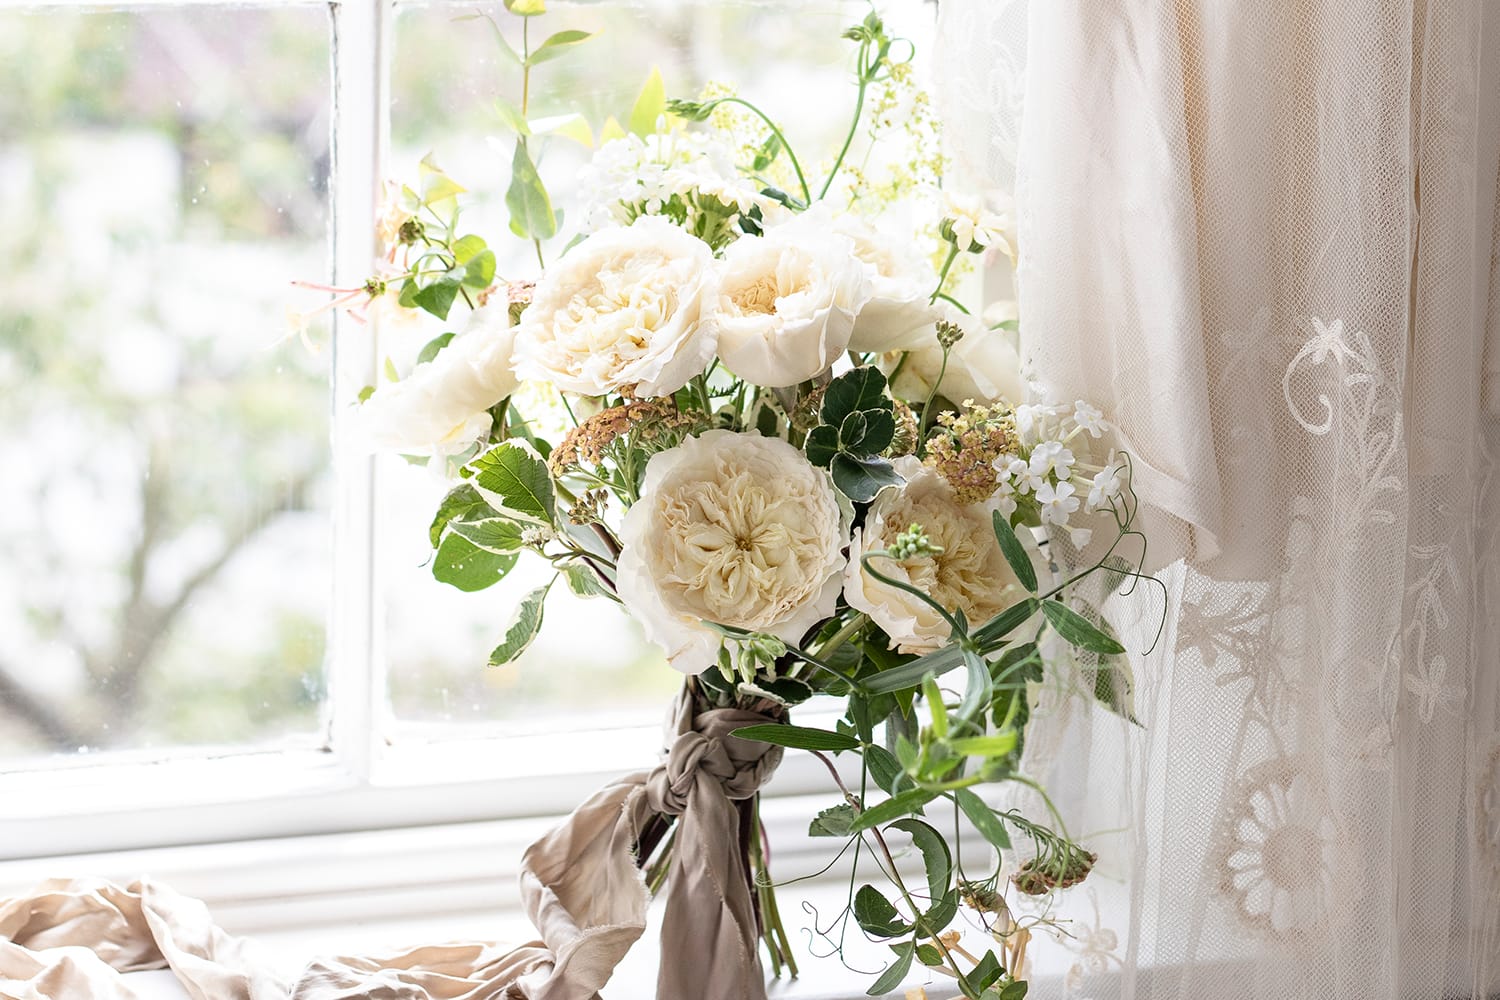 Patience باقة الزفاف الورود كريم على حافة النافذة